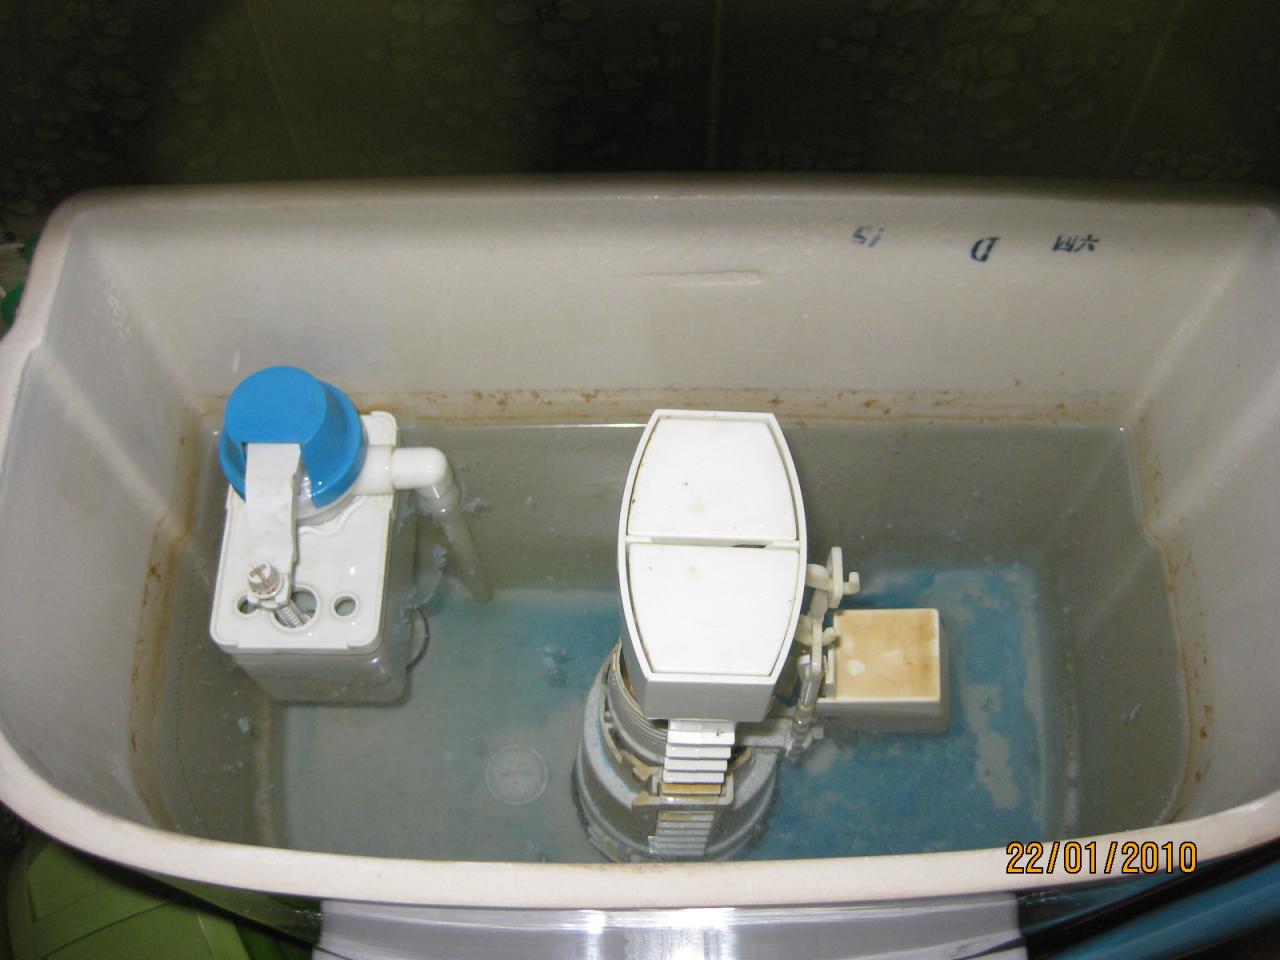 Divers] membrane sur dispositif chasse d'eau